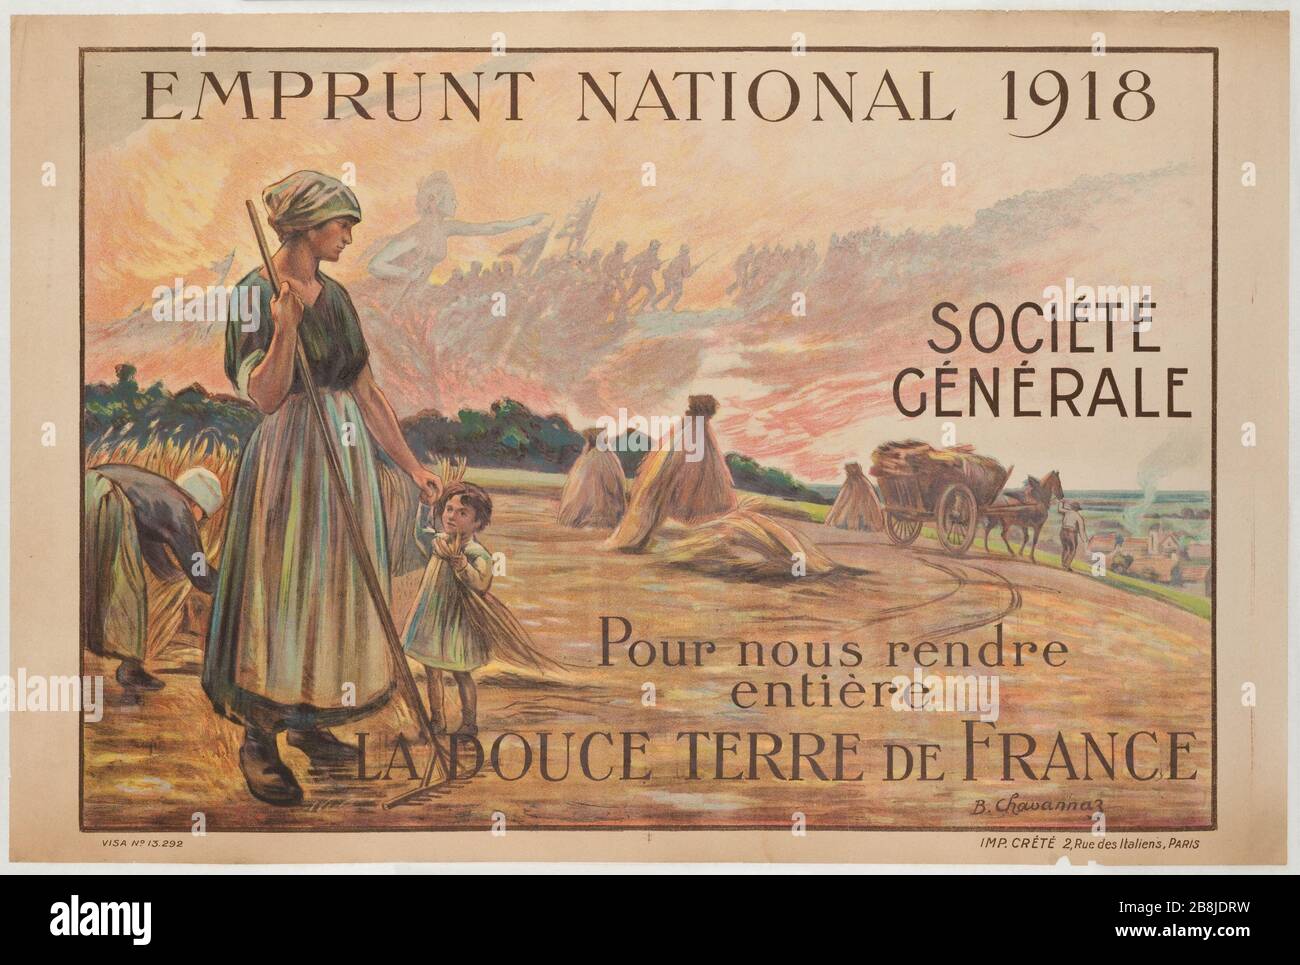 STAATSSCHULDEN 1918 SOCIETE GENERALE Bernard Chavannaz. "Emprunt National 1918, Société Générale". Lithographie. 1918. Paris, musée Carnavalet. Stockfoto